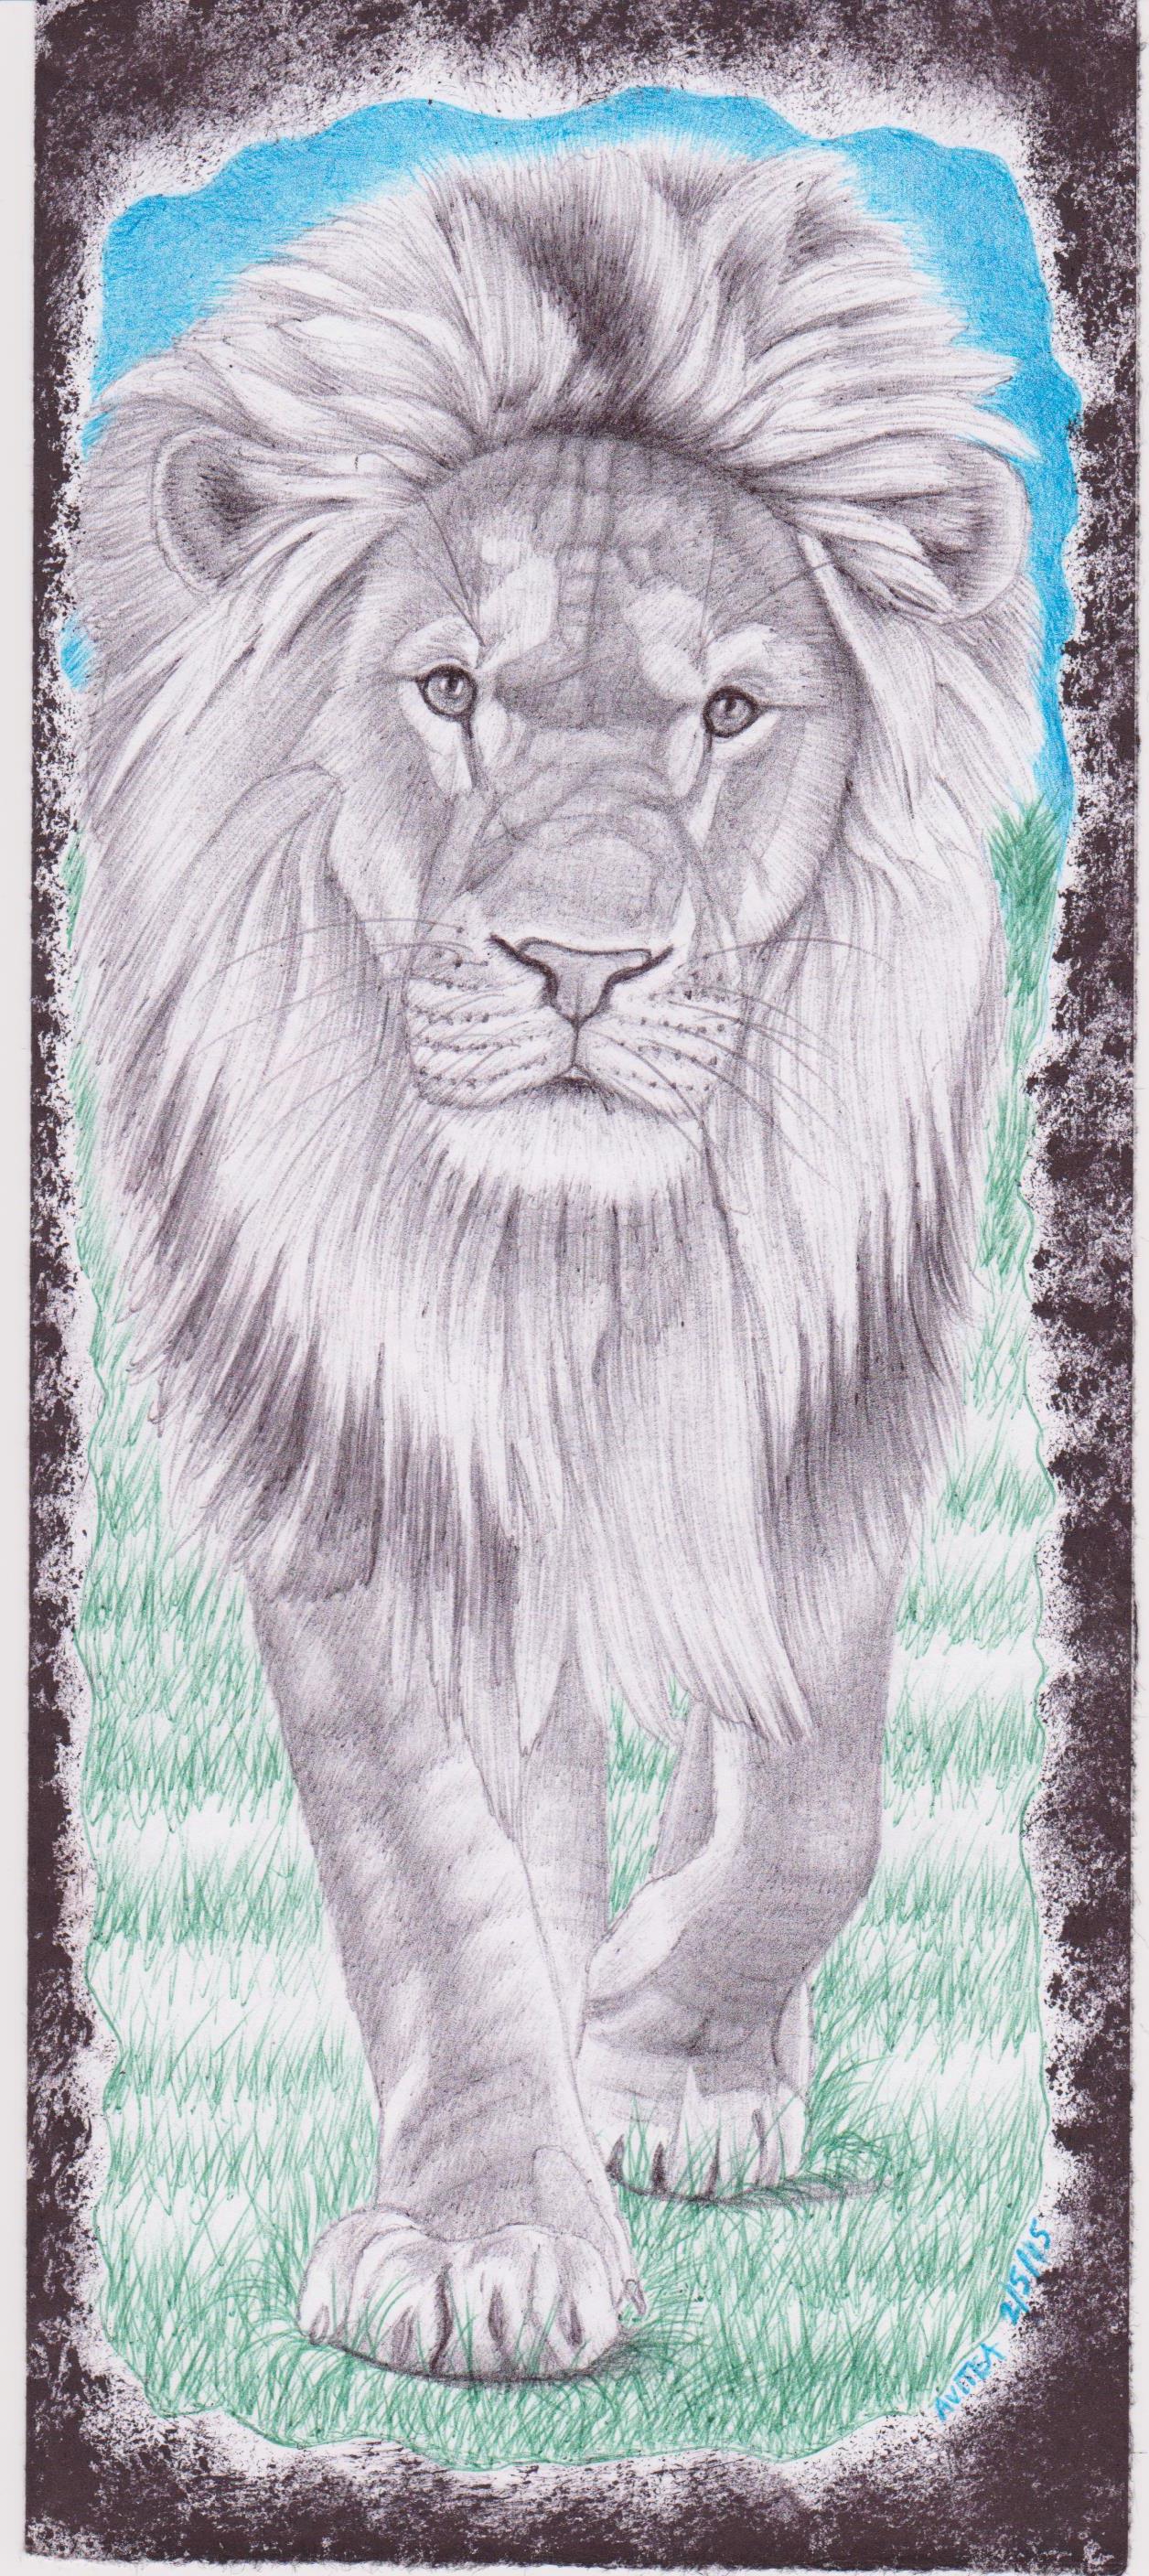 Lion by Christopher Avitea 001.jpg